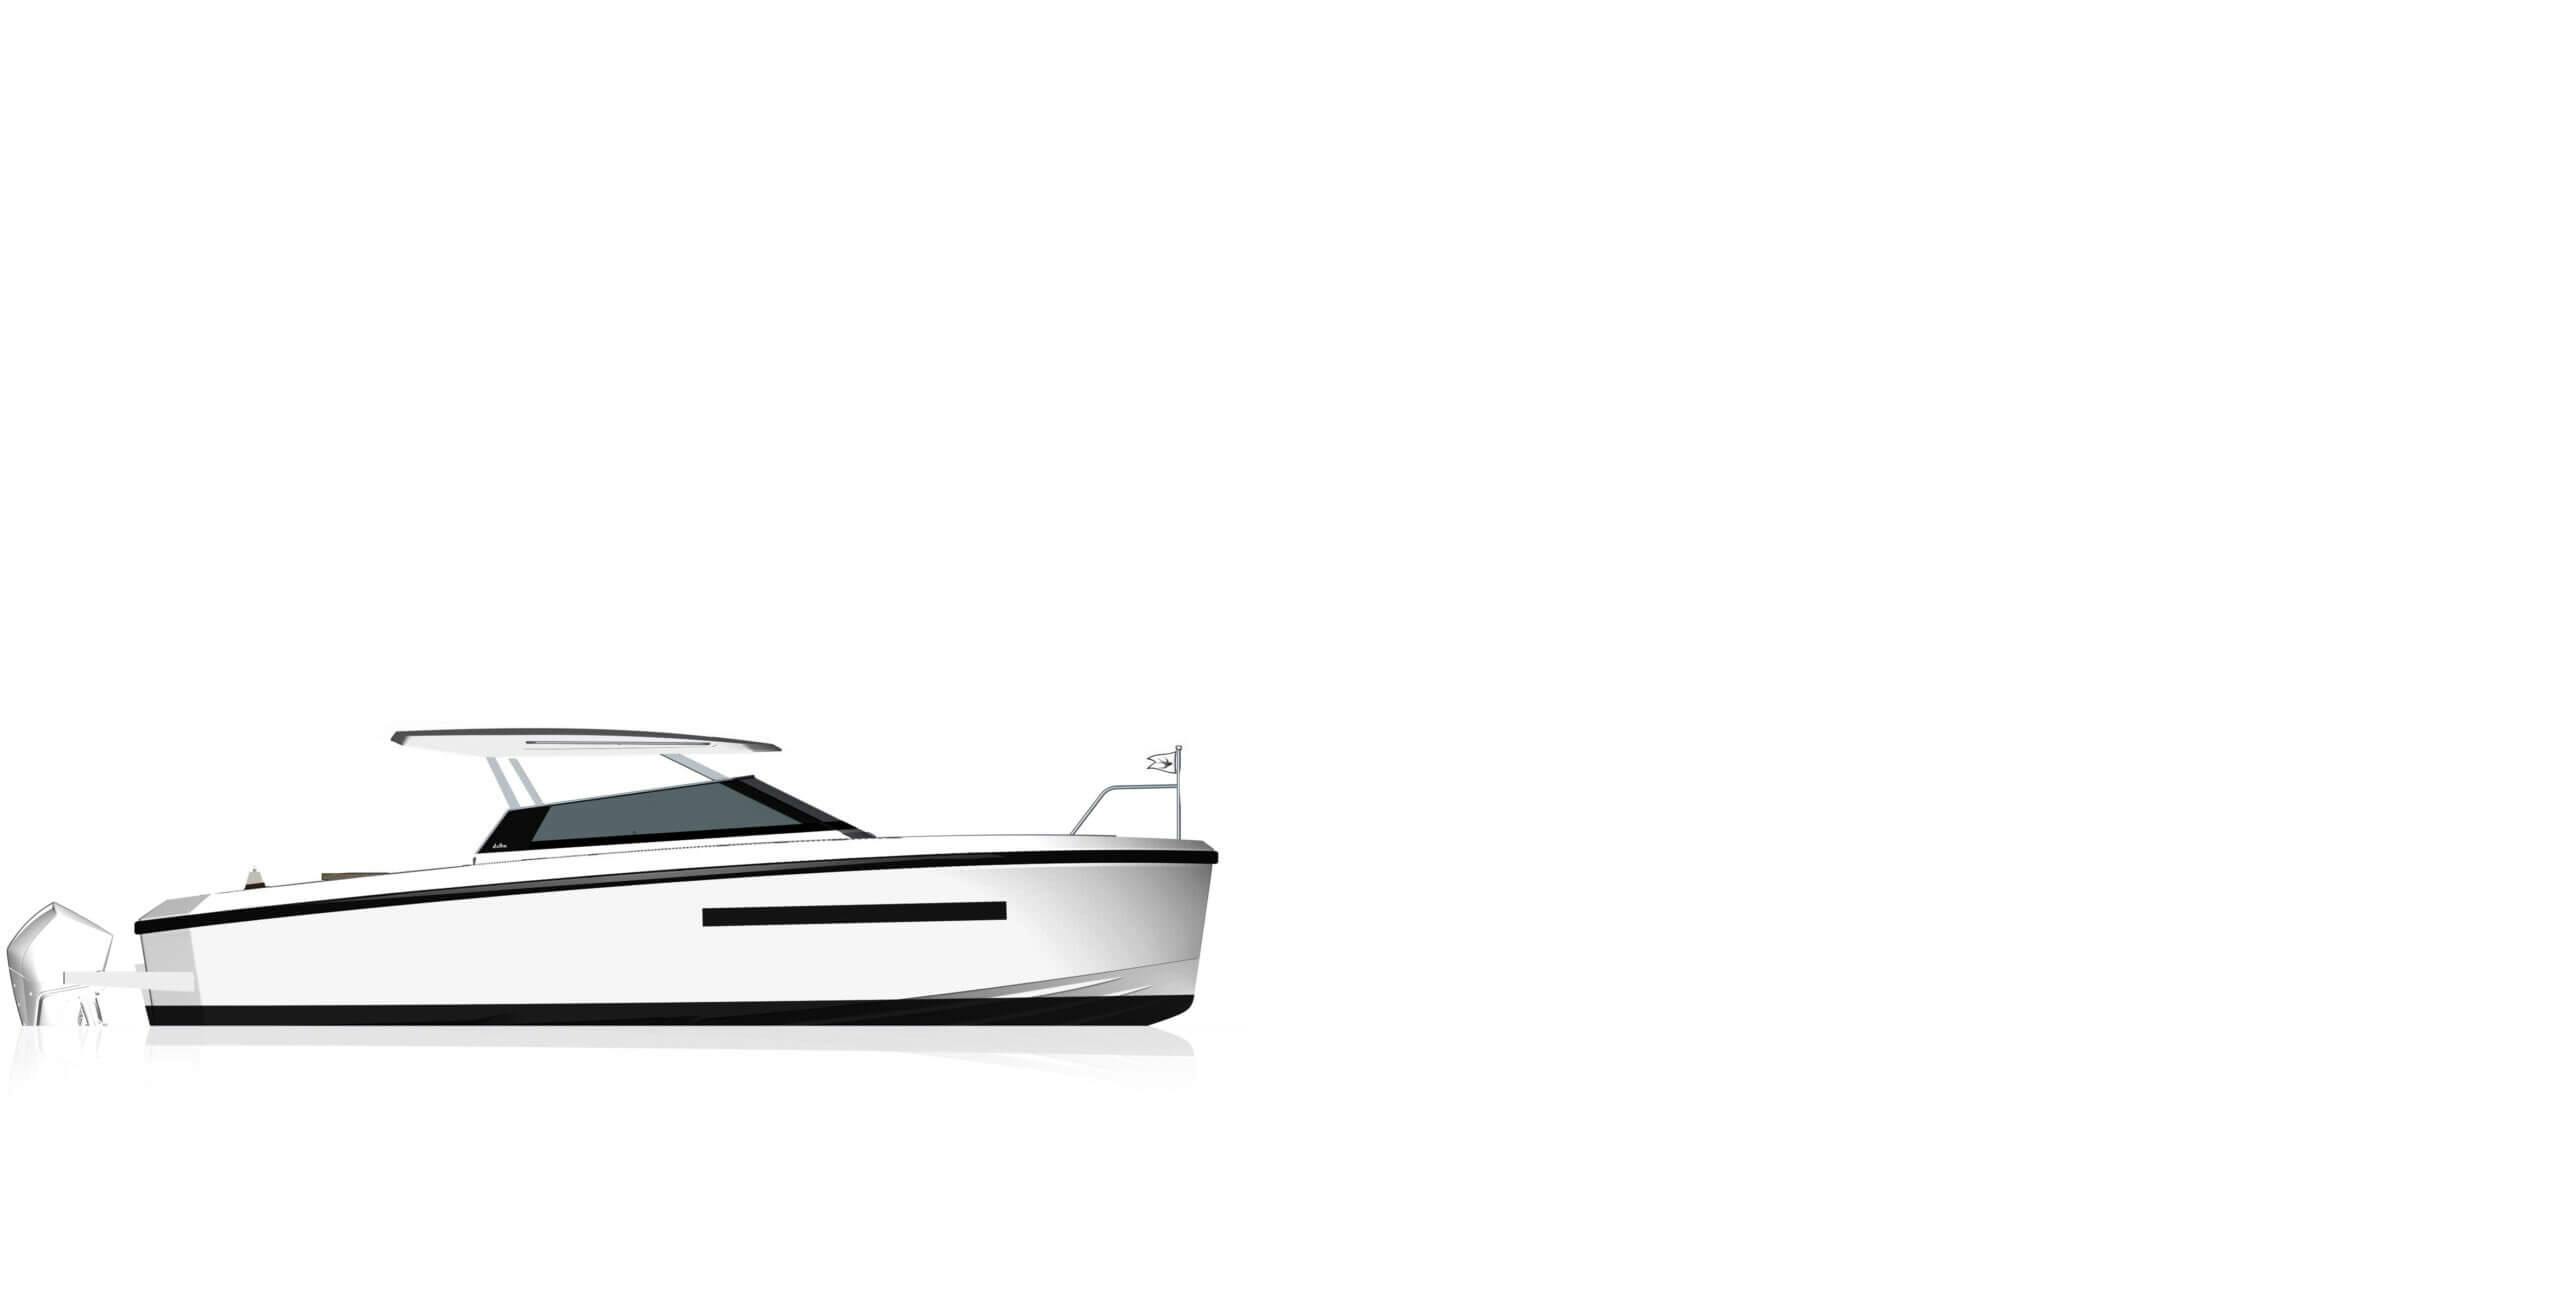 Boat Model: rhoddelta_sec3_delta_t33_1